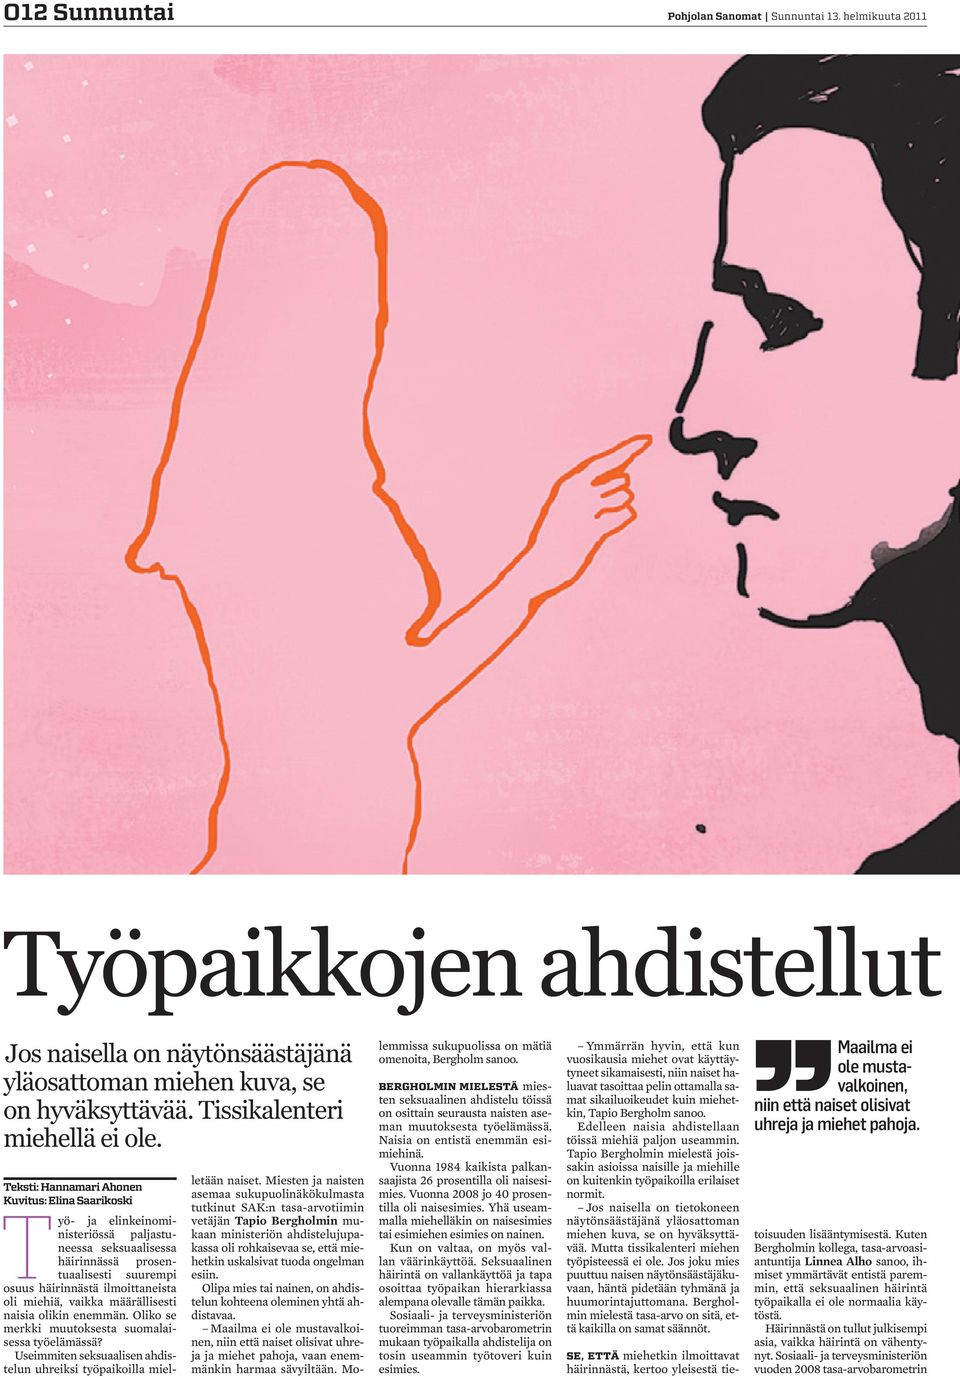 vaikka määrällisesti naisia olikin enemmän. Oliko se merkki muutoksesta suomalaisessa työelämässä? Useimmiten seksuaalisen ahdistelun uhreiksi työpaikoilla mielletään naiset.